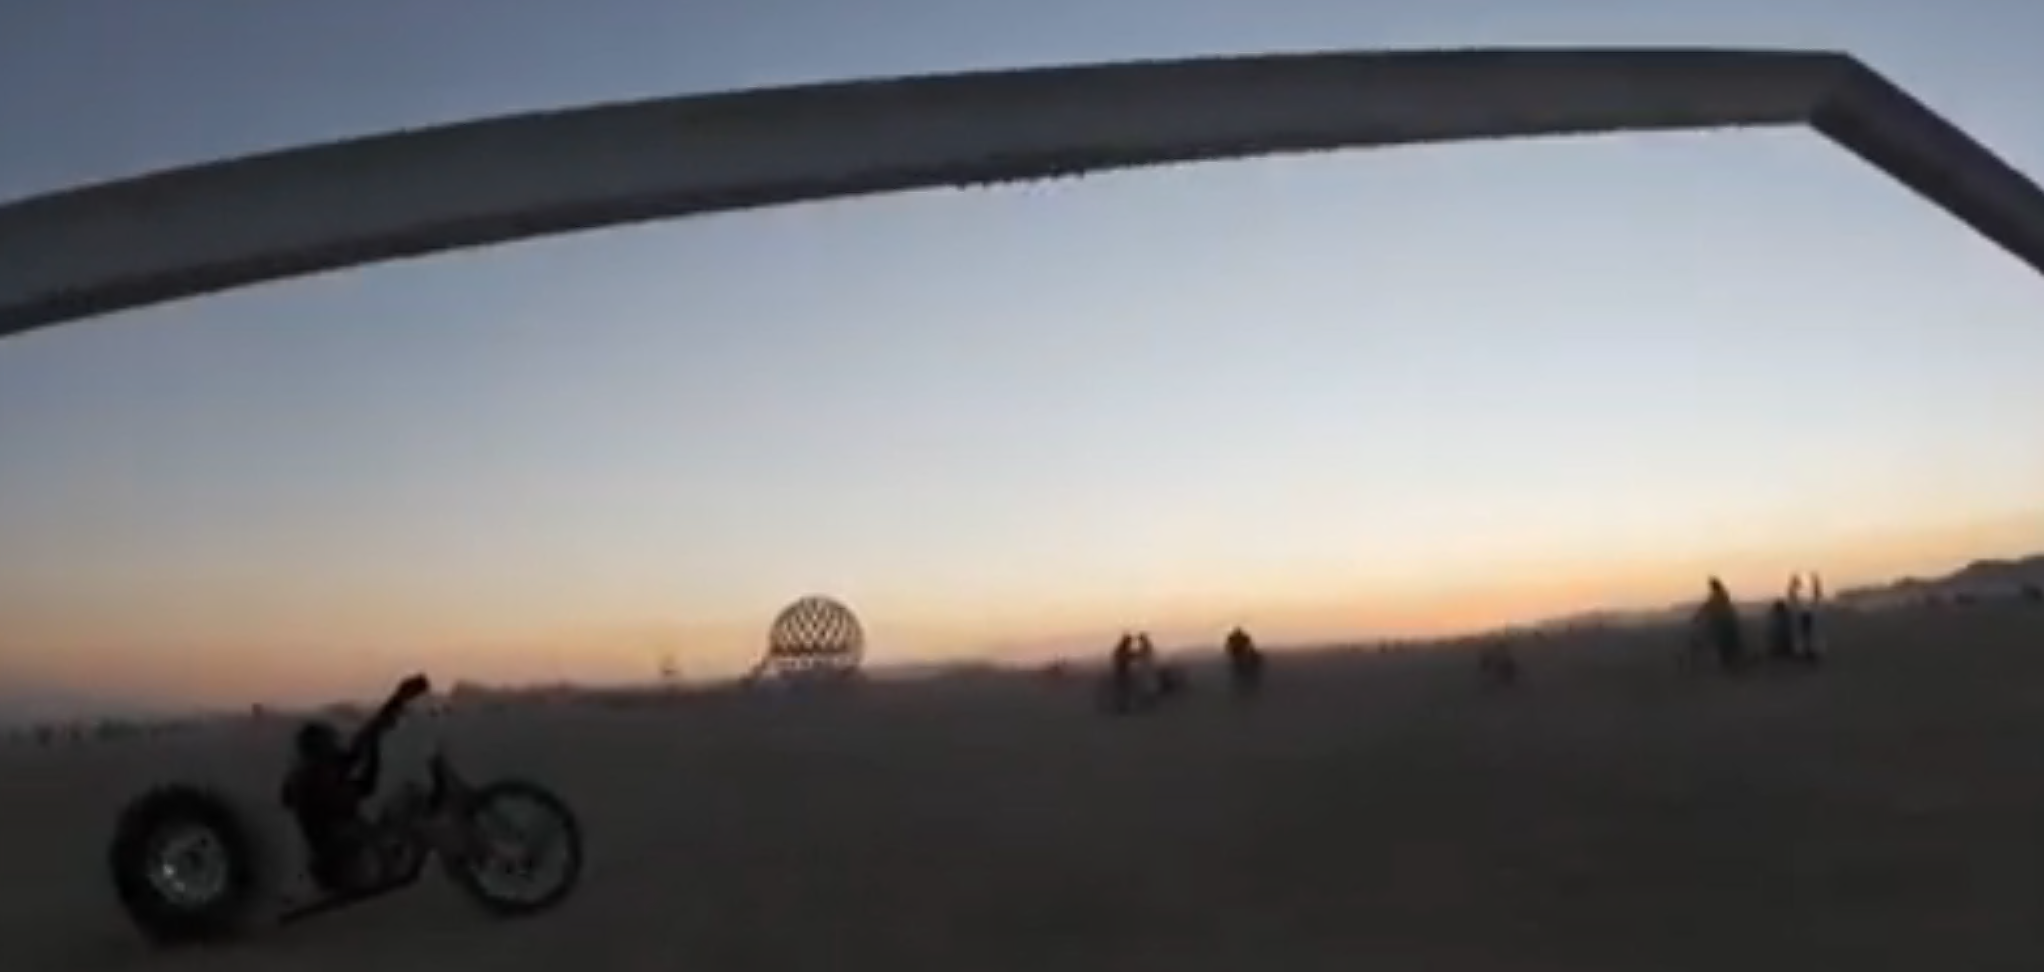 Beam, an early morning ride at Burning Man